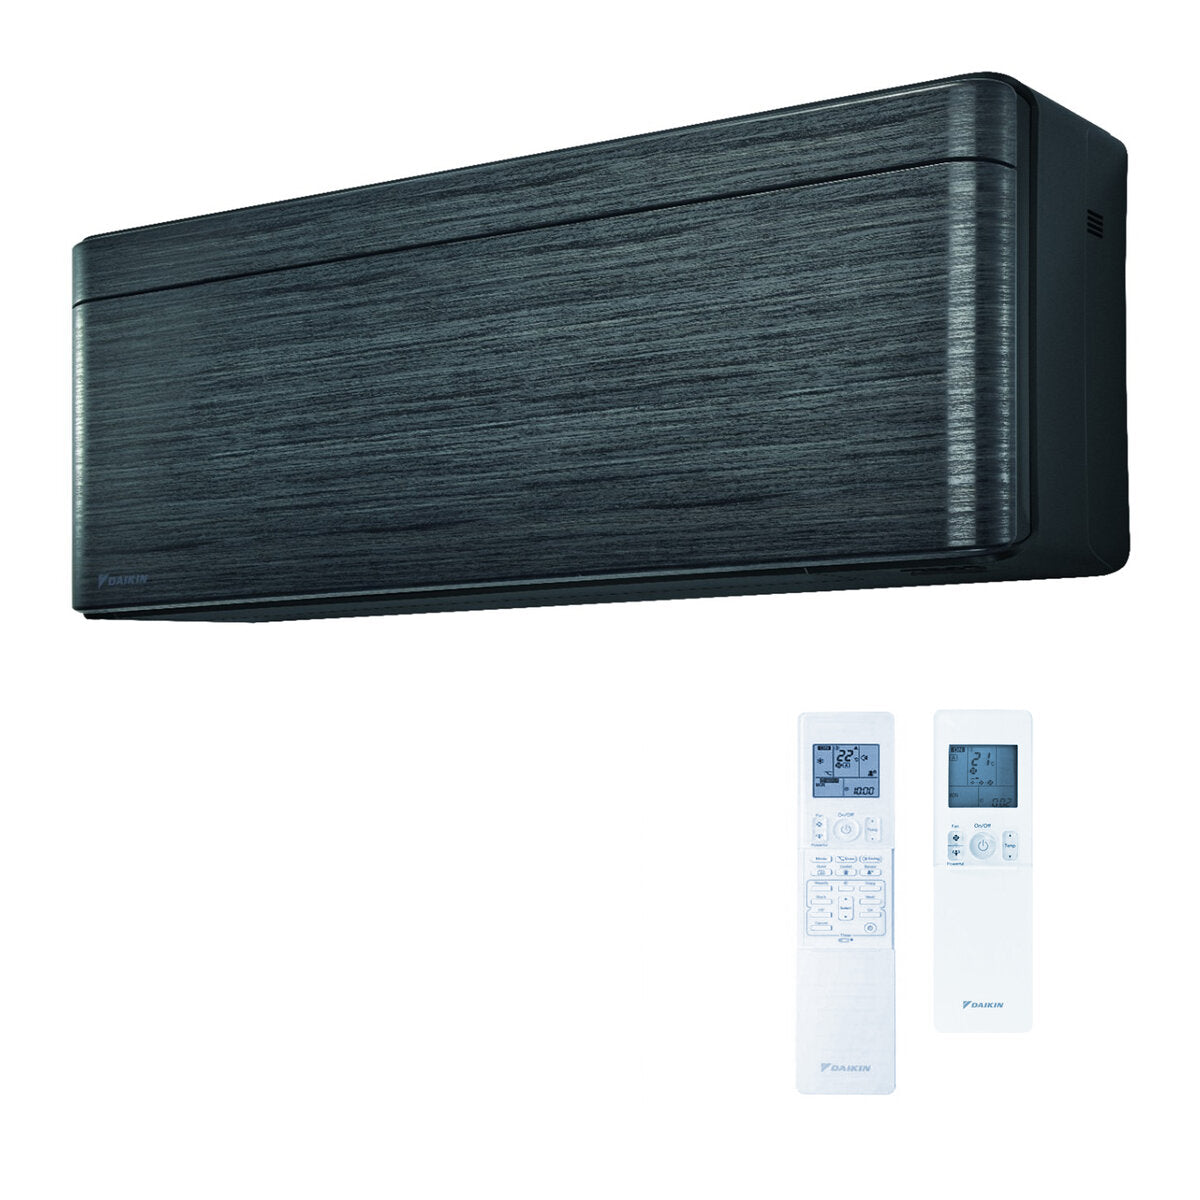 Daikin Stylish air conditioner penta split 7000 + 9000 + 9000 + 9000 + 18000 BTU inverter A ++ wifi outdoor unit 9.0 kW